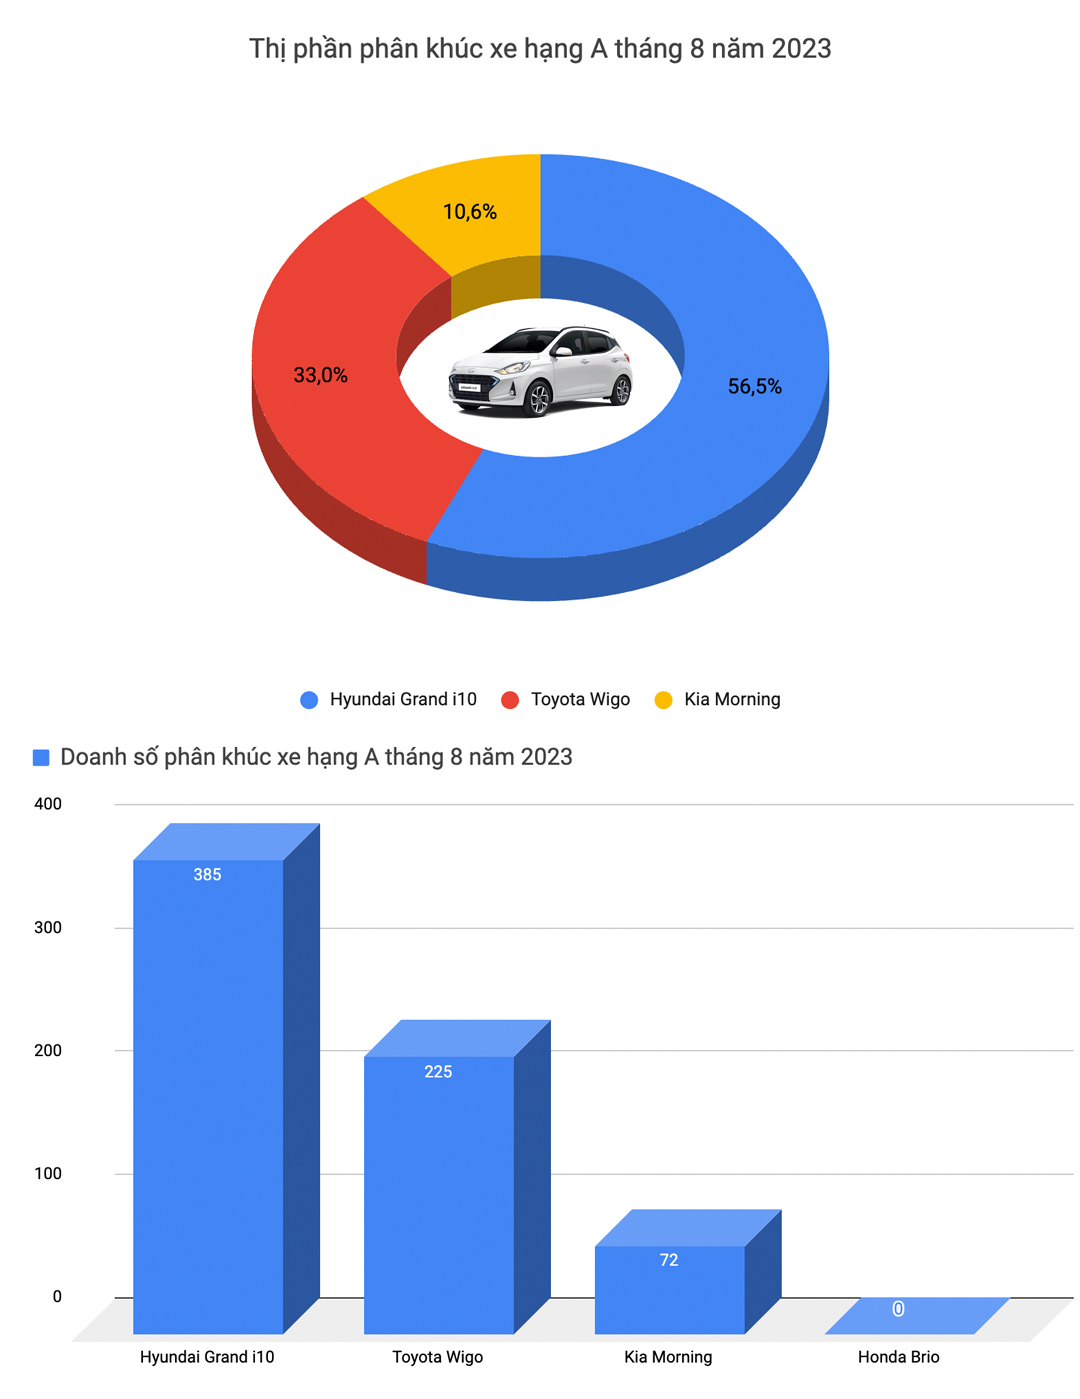 Mazda CX-5 trở thành vua doanh số tháng 8, Mazda3 và CR-V quay lại top xe bán chạy - Ảnh 2.